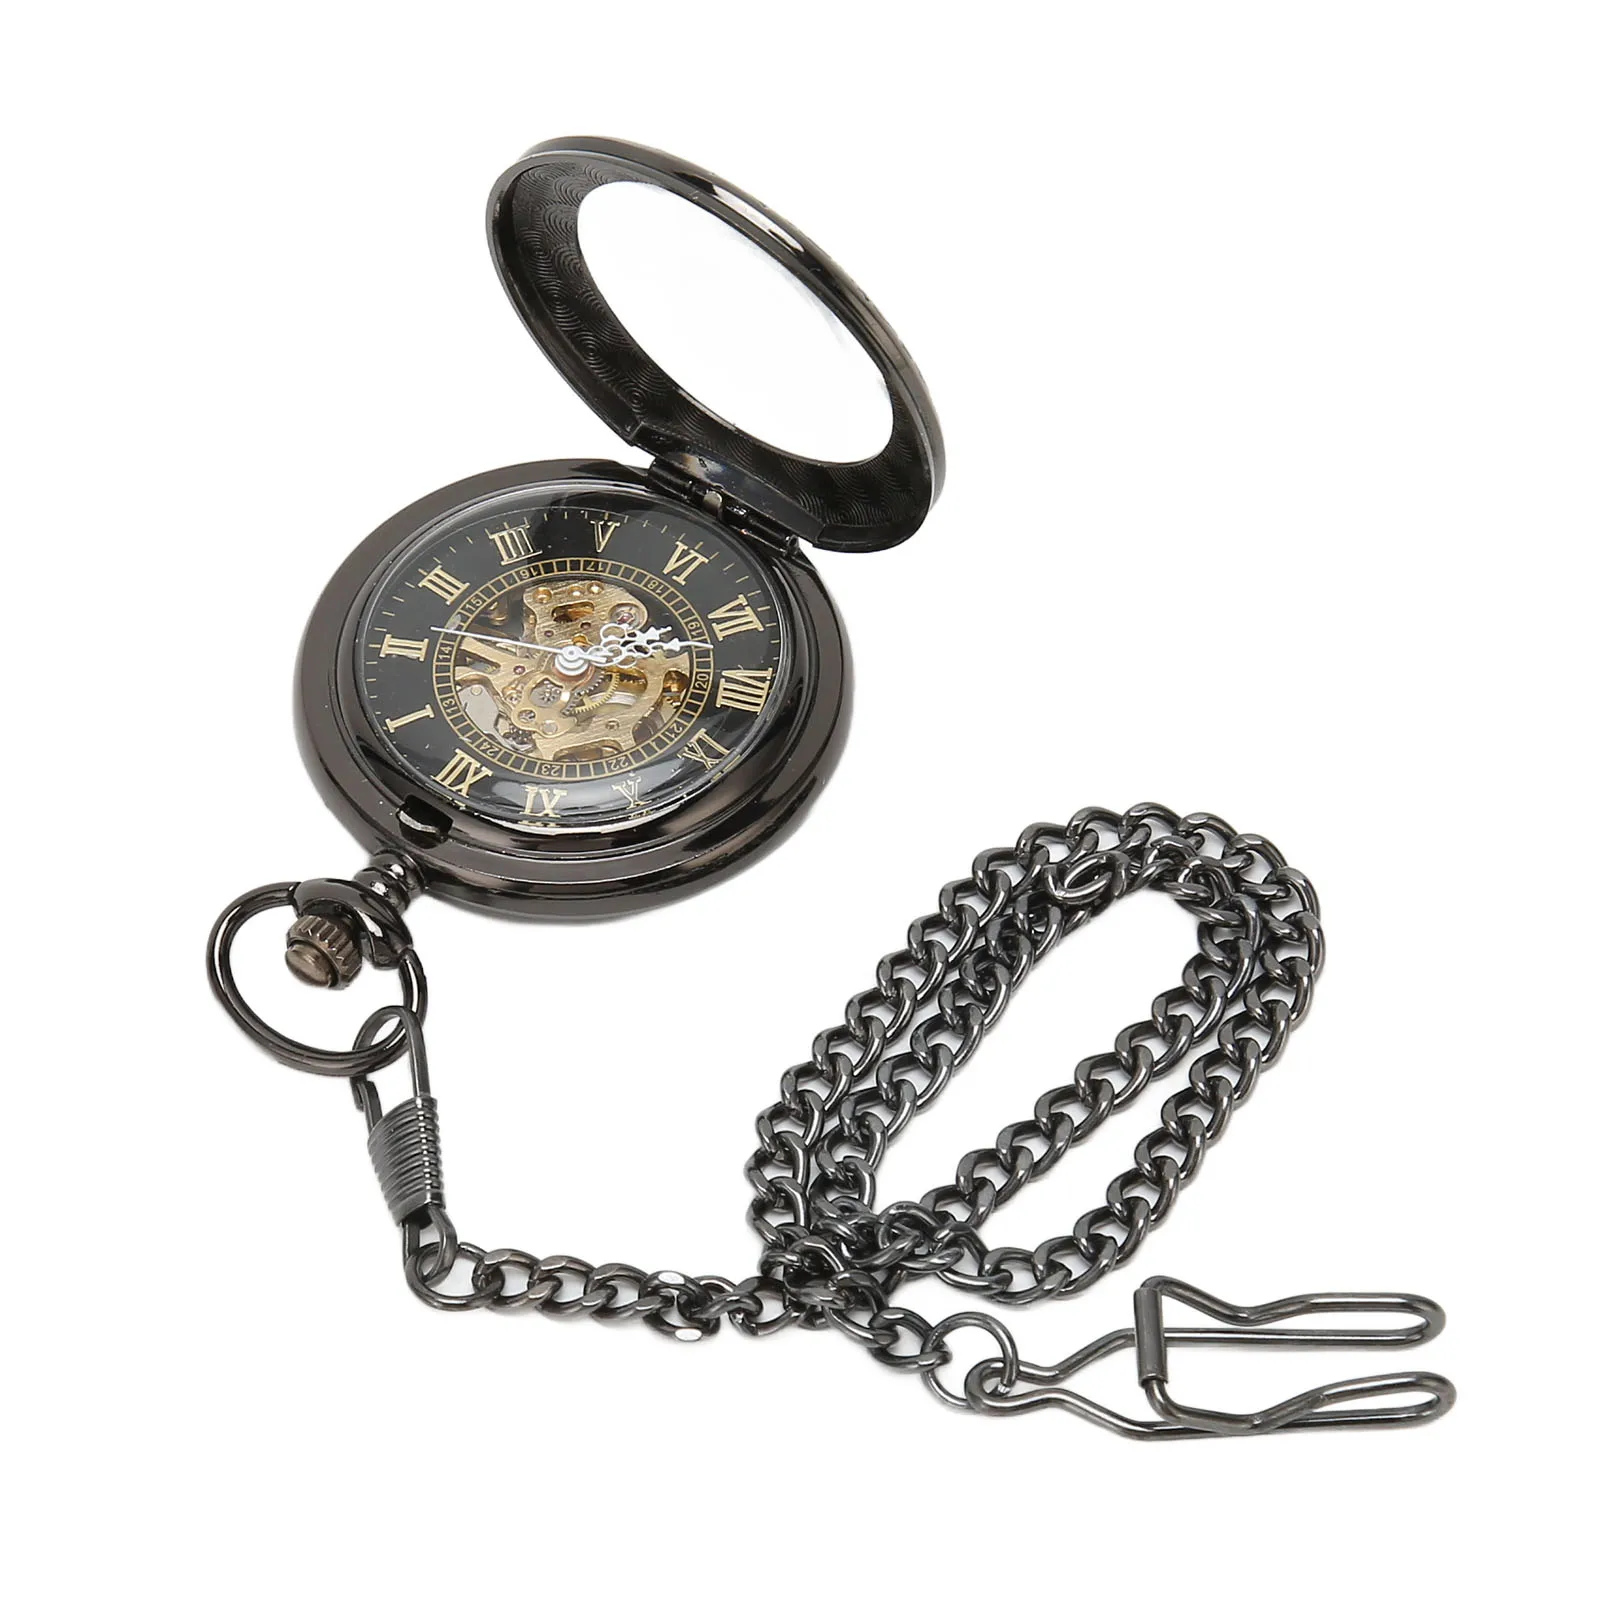 Esqueleto Pocketwatch Movimento Mecânico Vintage Esqueleto Relógio de Bolso Numerais Romanos Caso Dobro para Aniversário